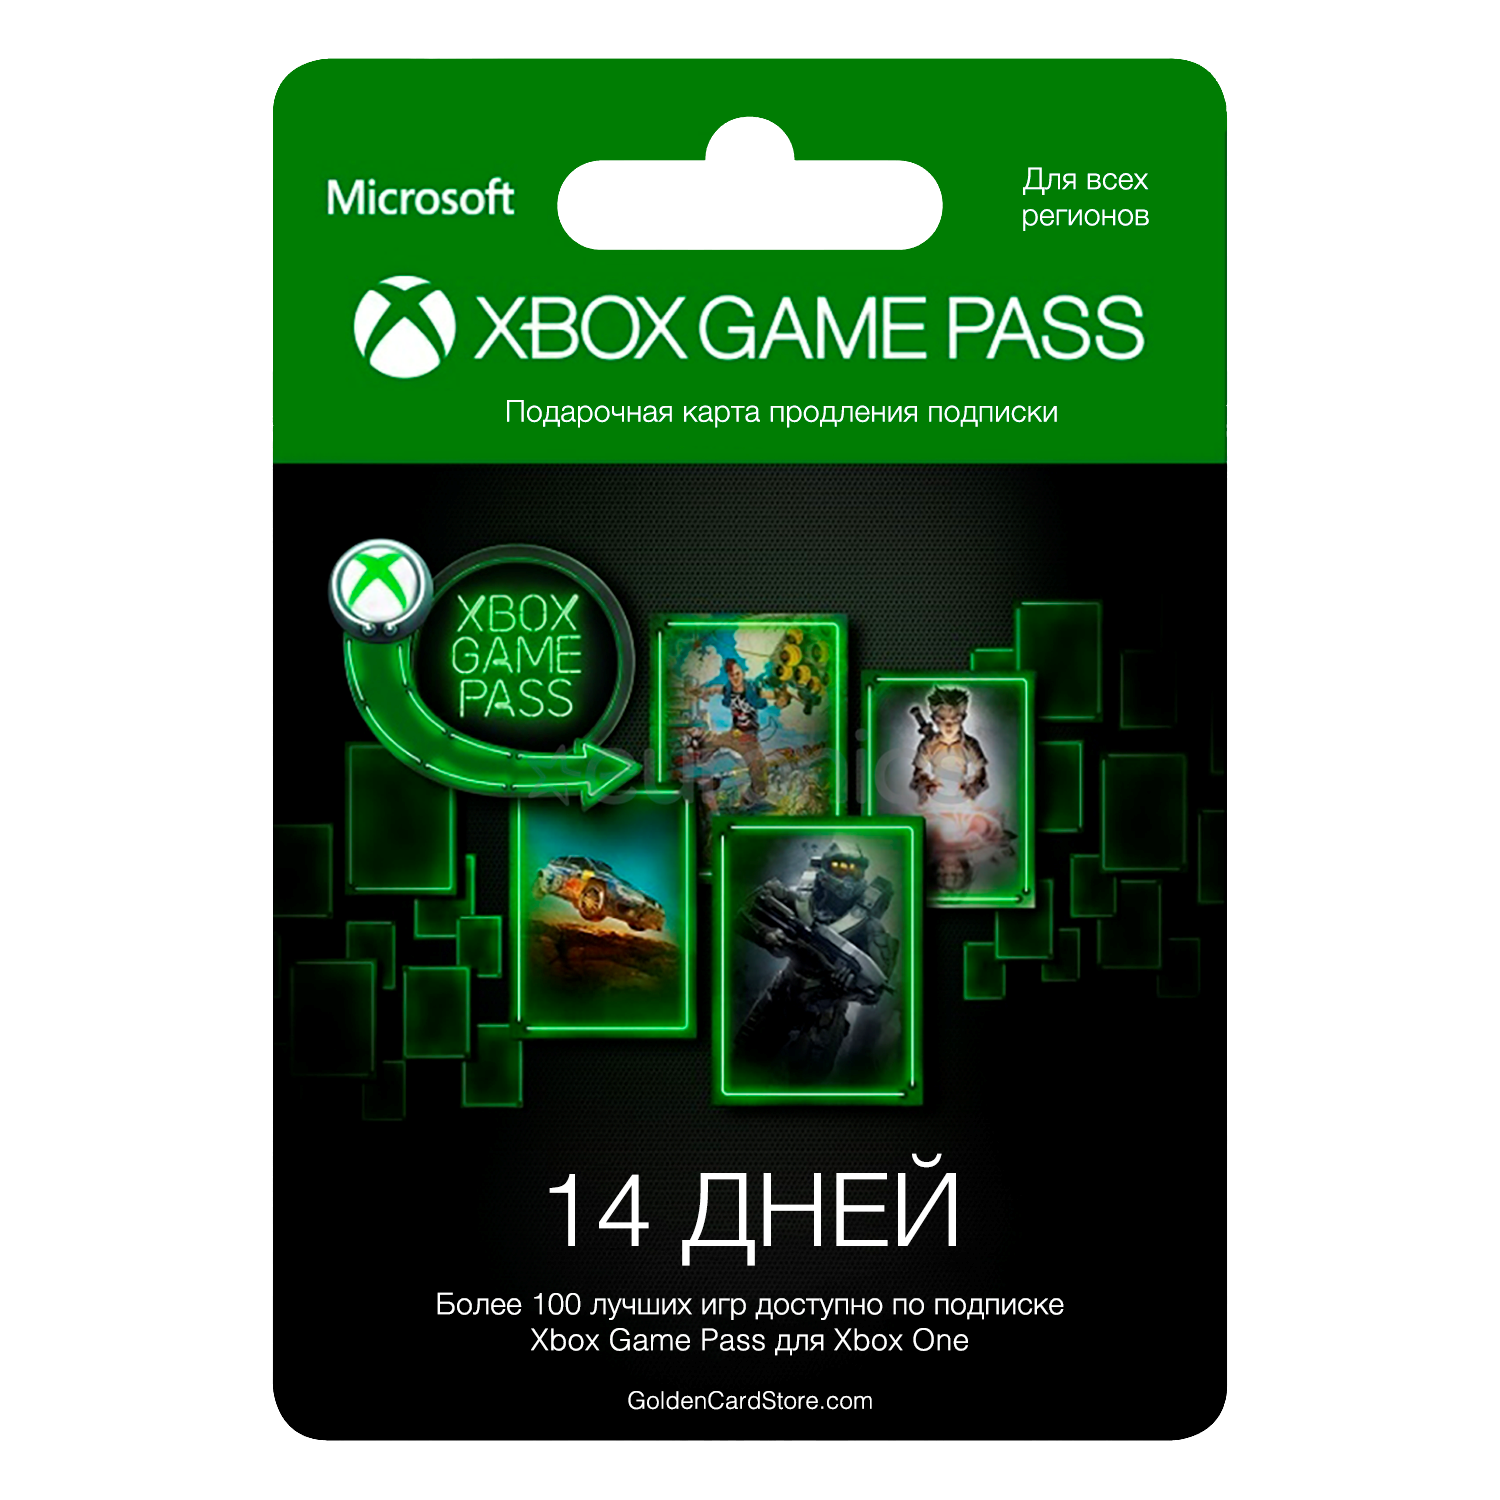 Хбокс подписка игры. Подписка Xbox game Pass. Карта для Xbox game Pass. Microsoft Xbox подписка. Карточка гейм пасс.